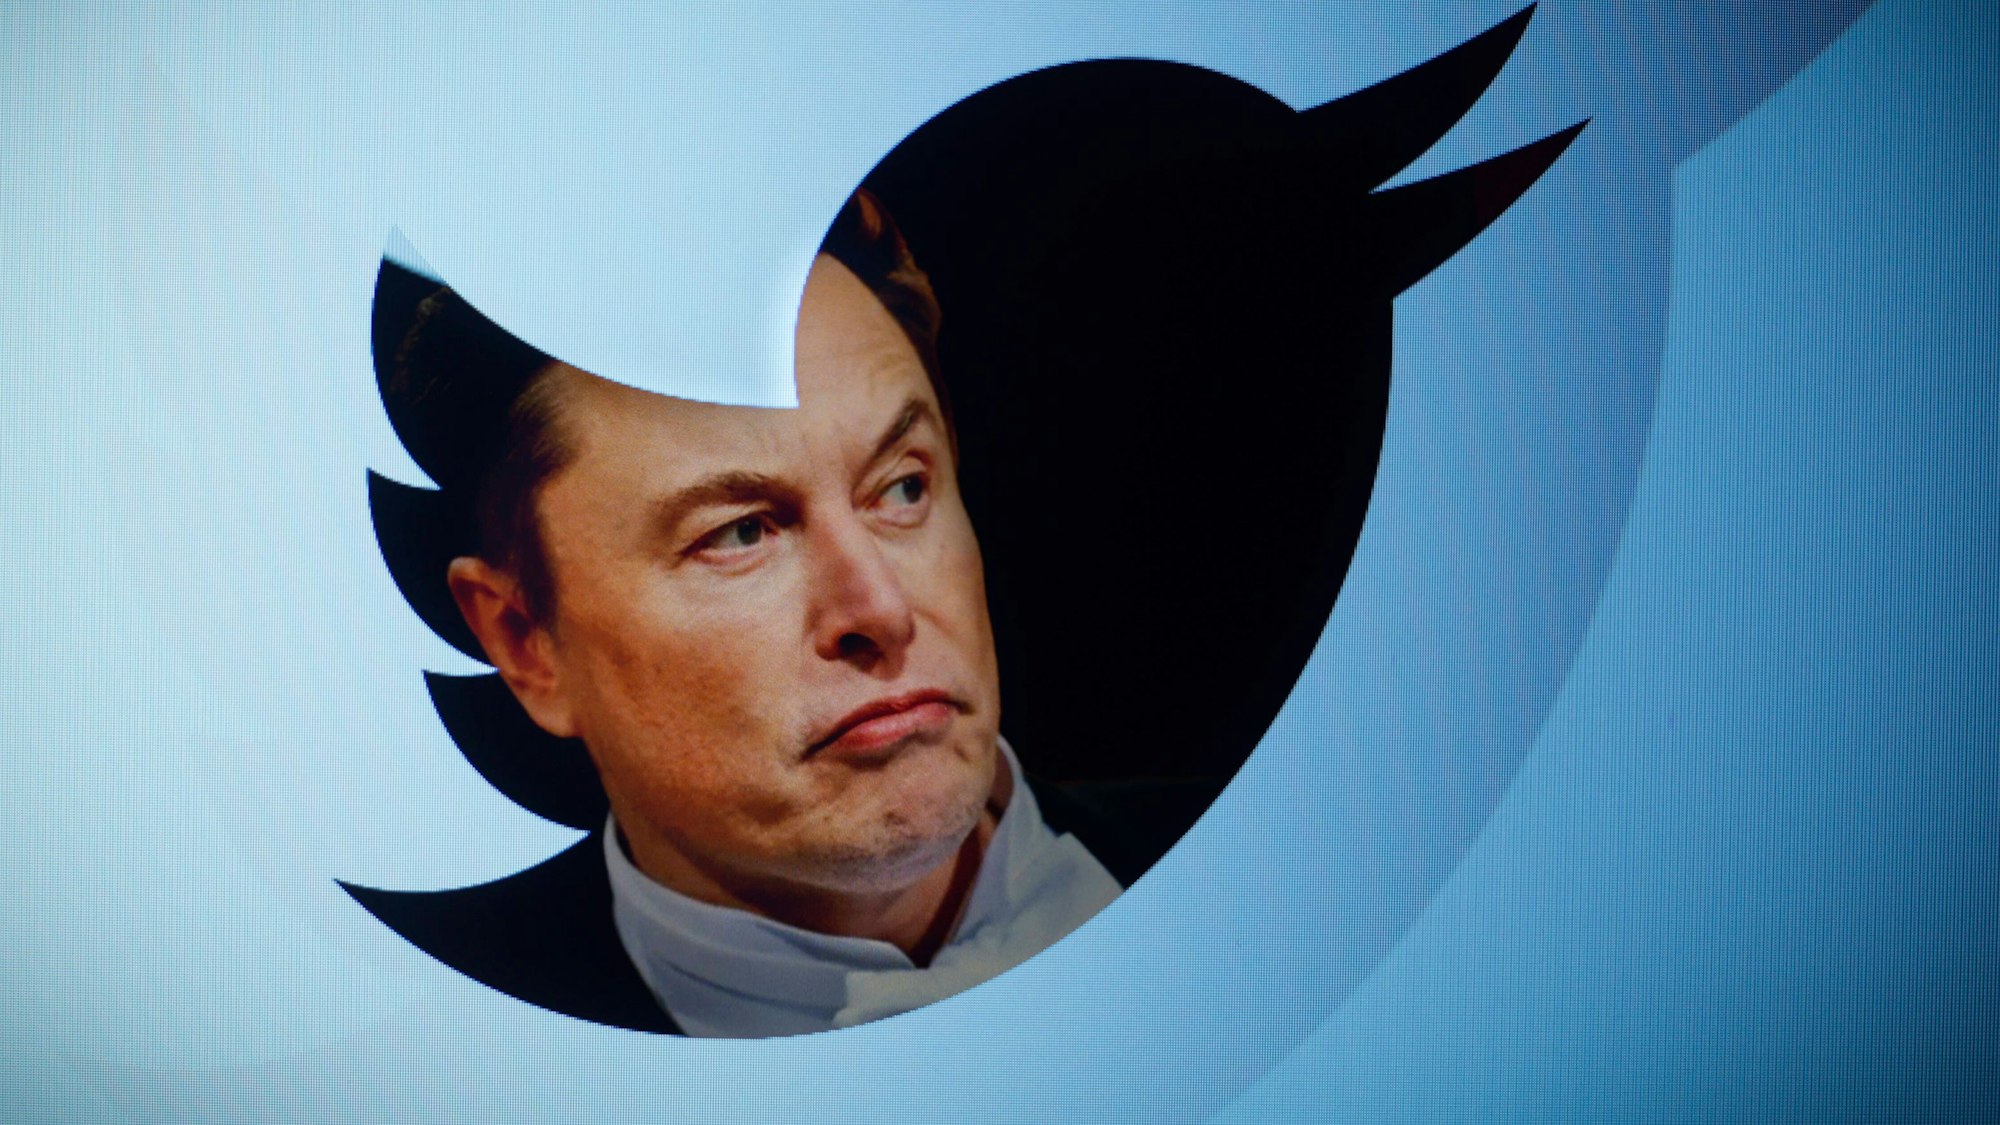 Twitter-Chef Elon Musk ist in einer Fotomontage innerhalb des Twitter-Logos, einem blauen Vogel, abgebildet.